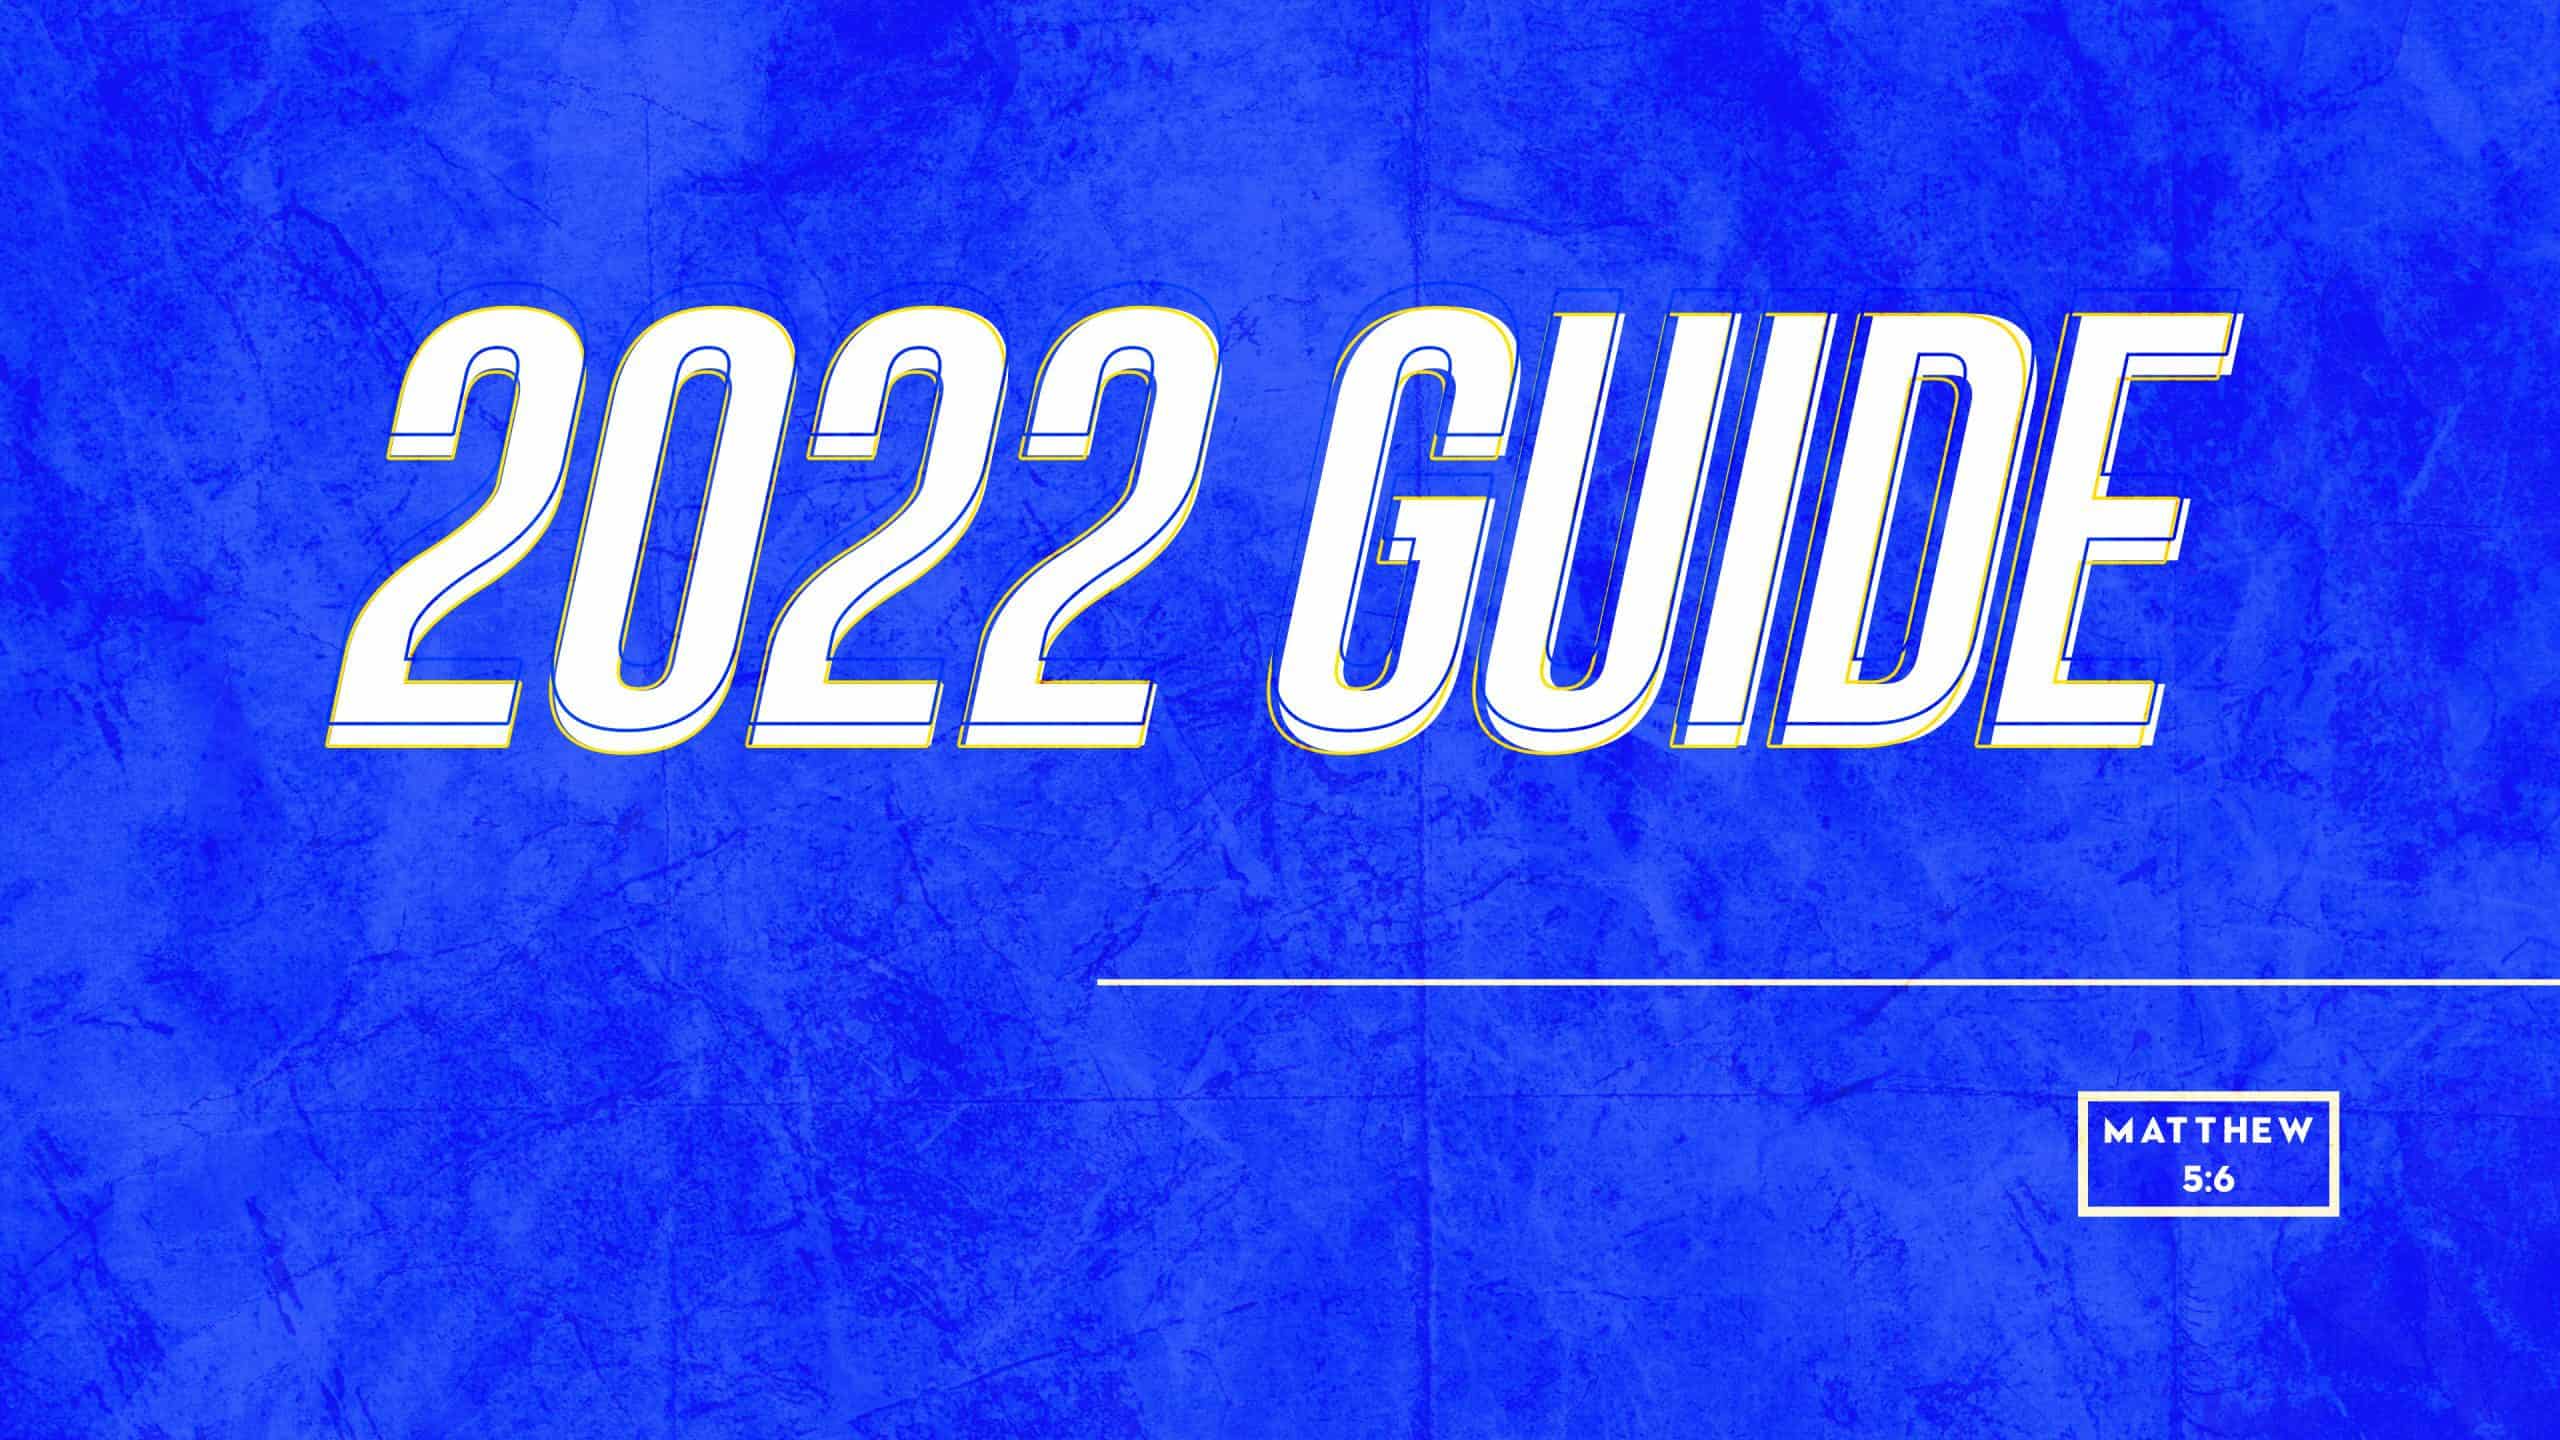 2022 guide